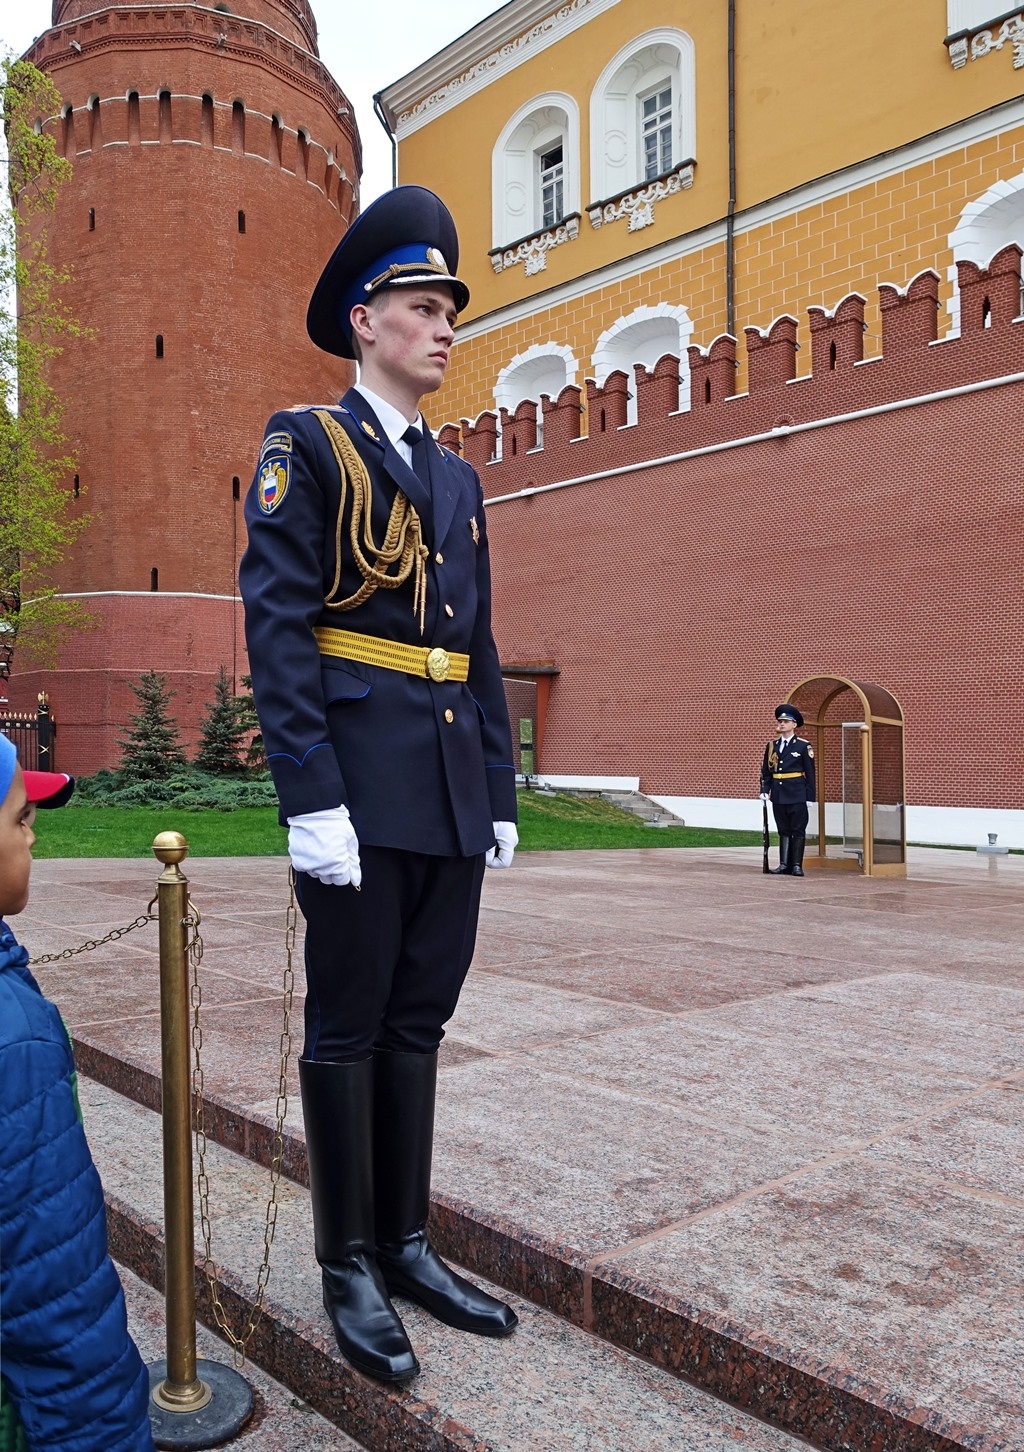 Продолжение кремлевских. Солдаты у Кремля. Курсанты Кремля. Военные у стен Кремля. Солдат на фоне Кремля.